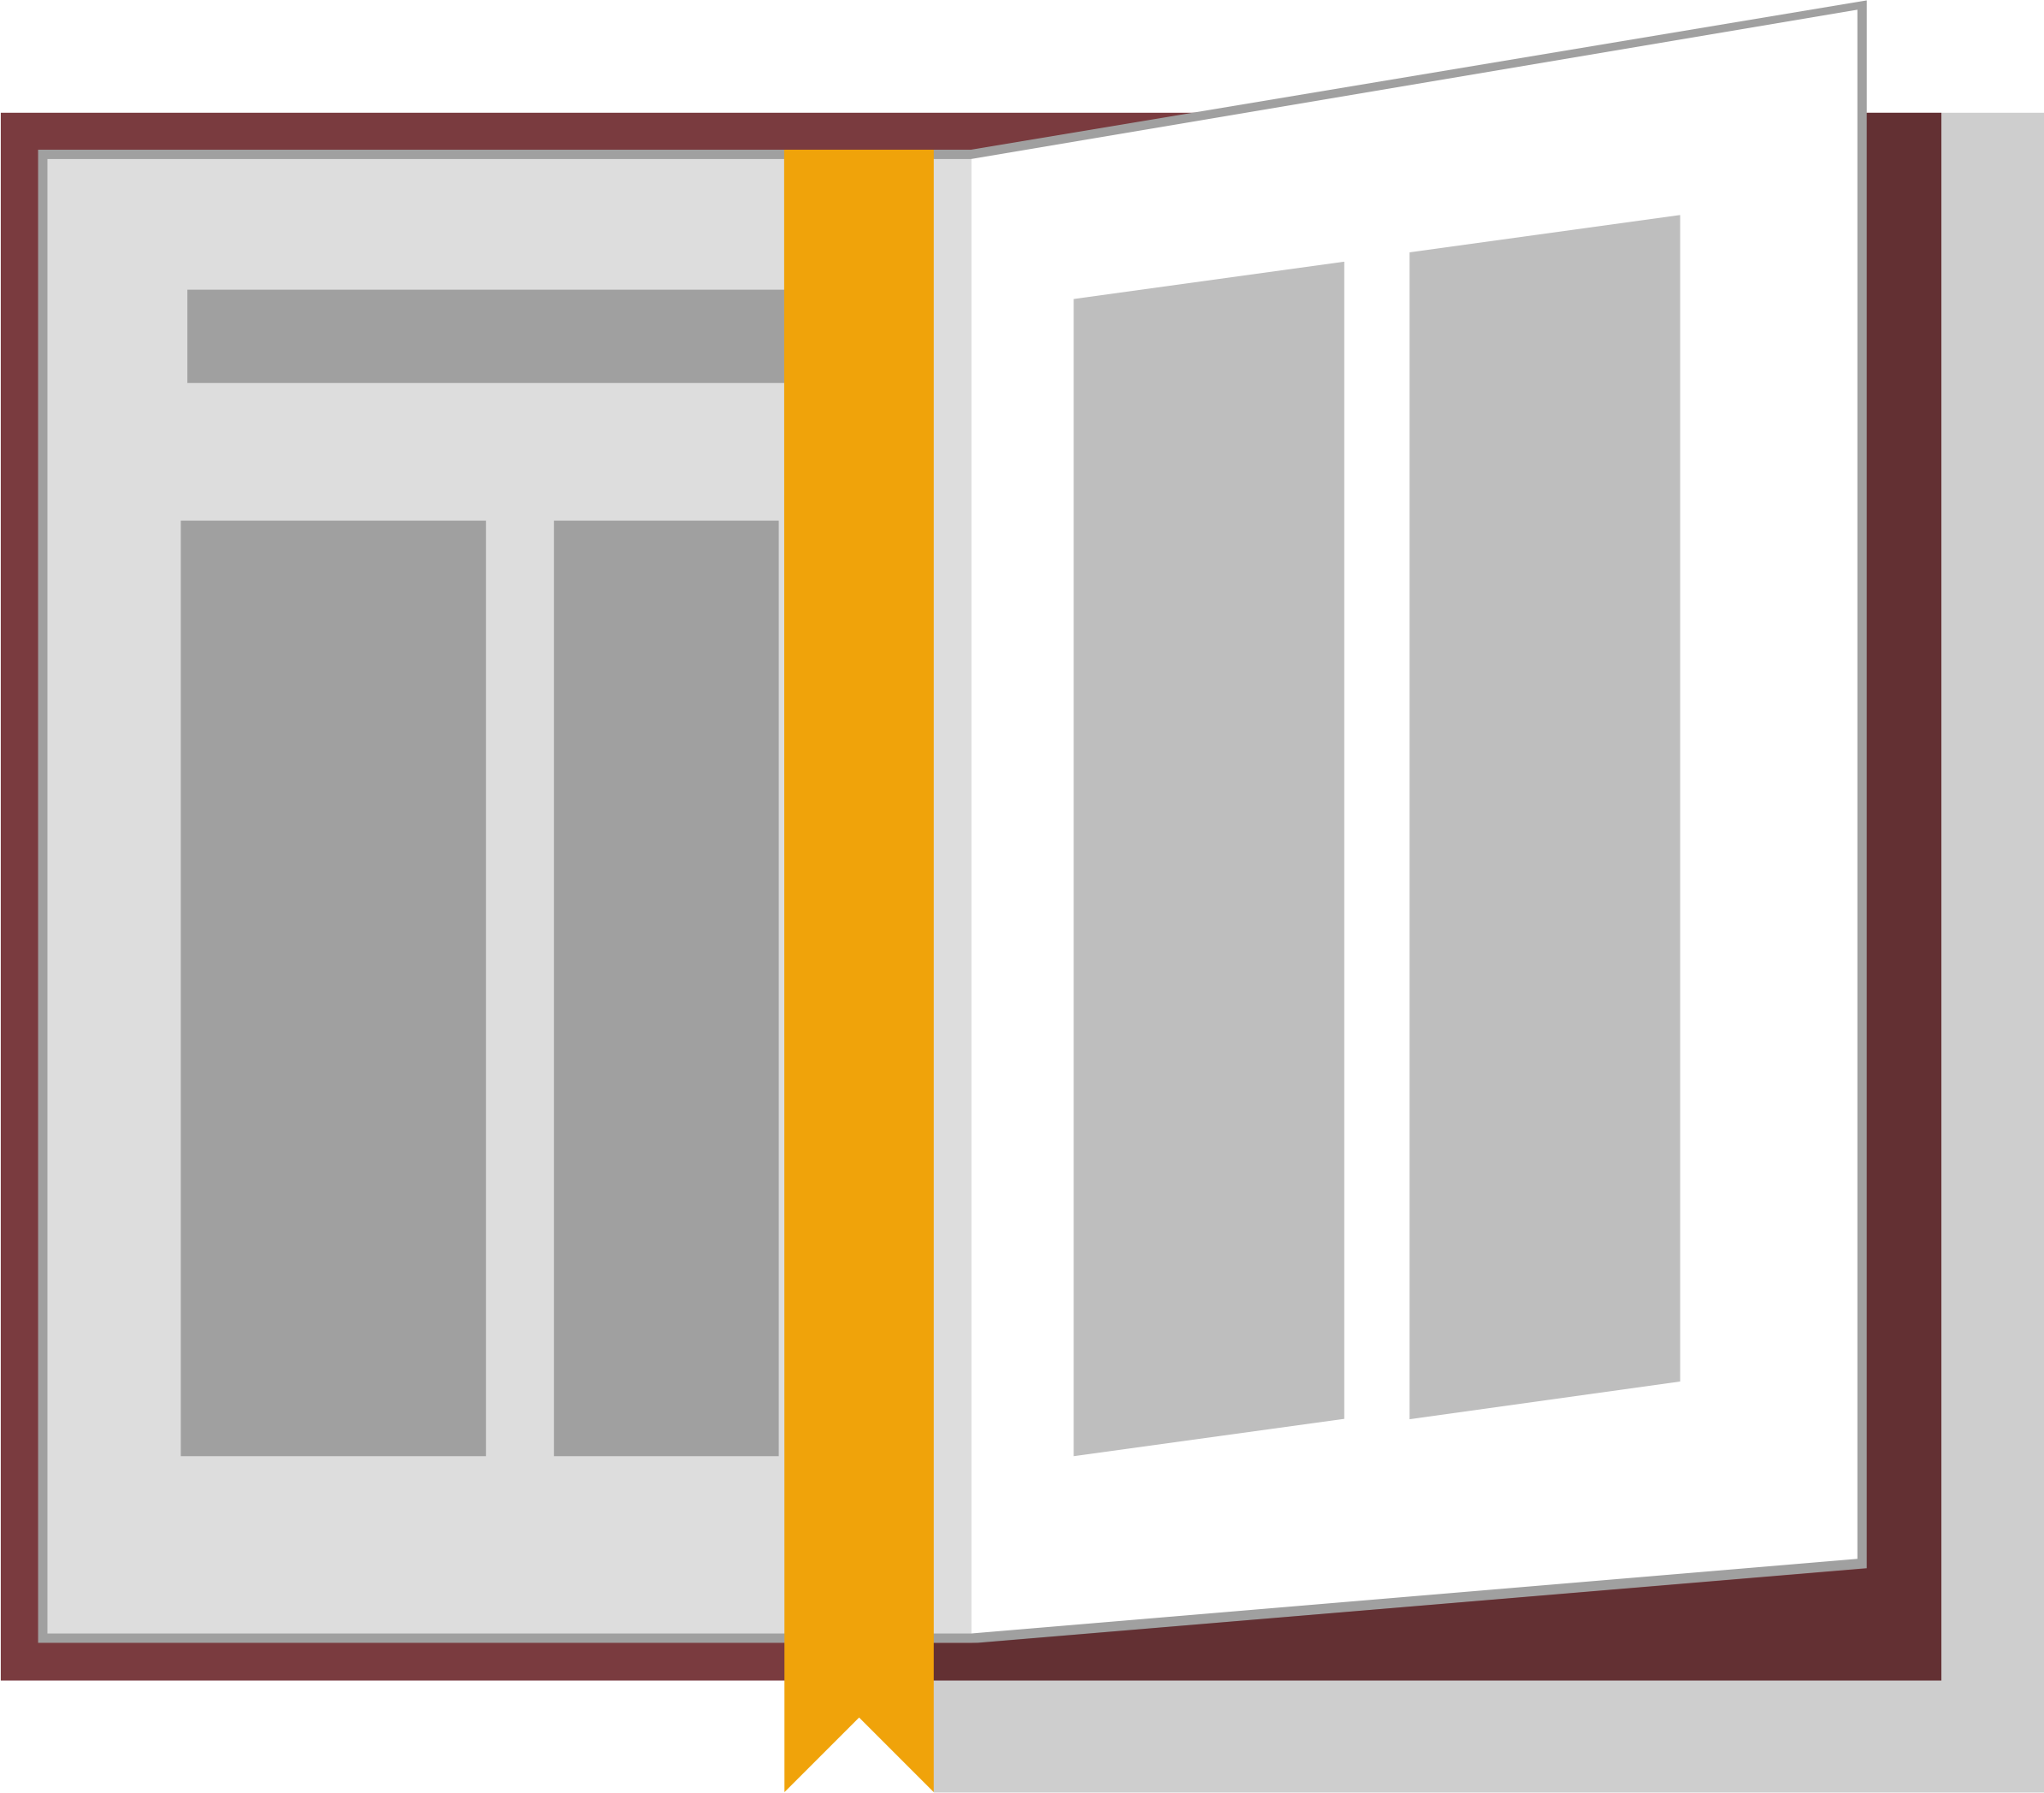 clipart bible open book